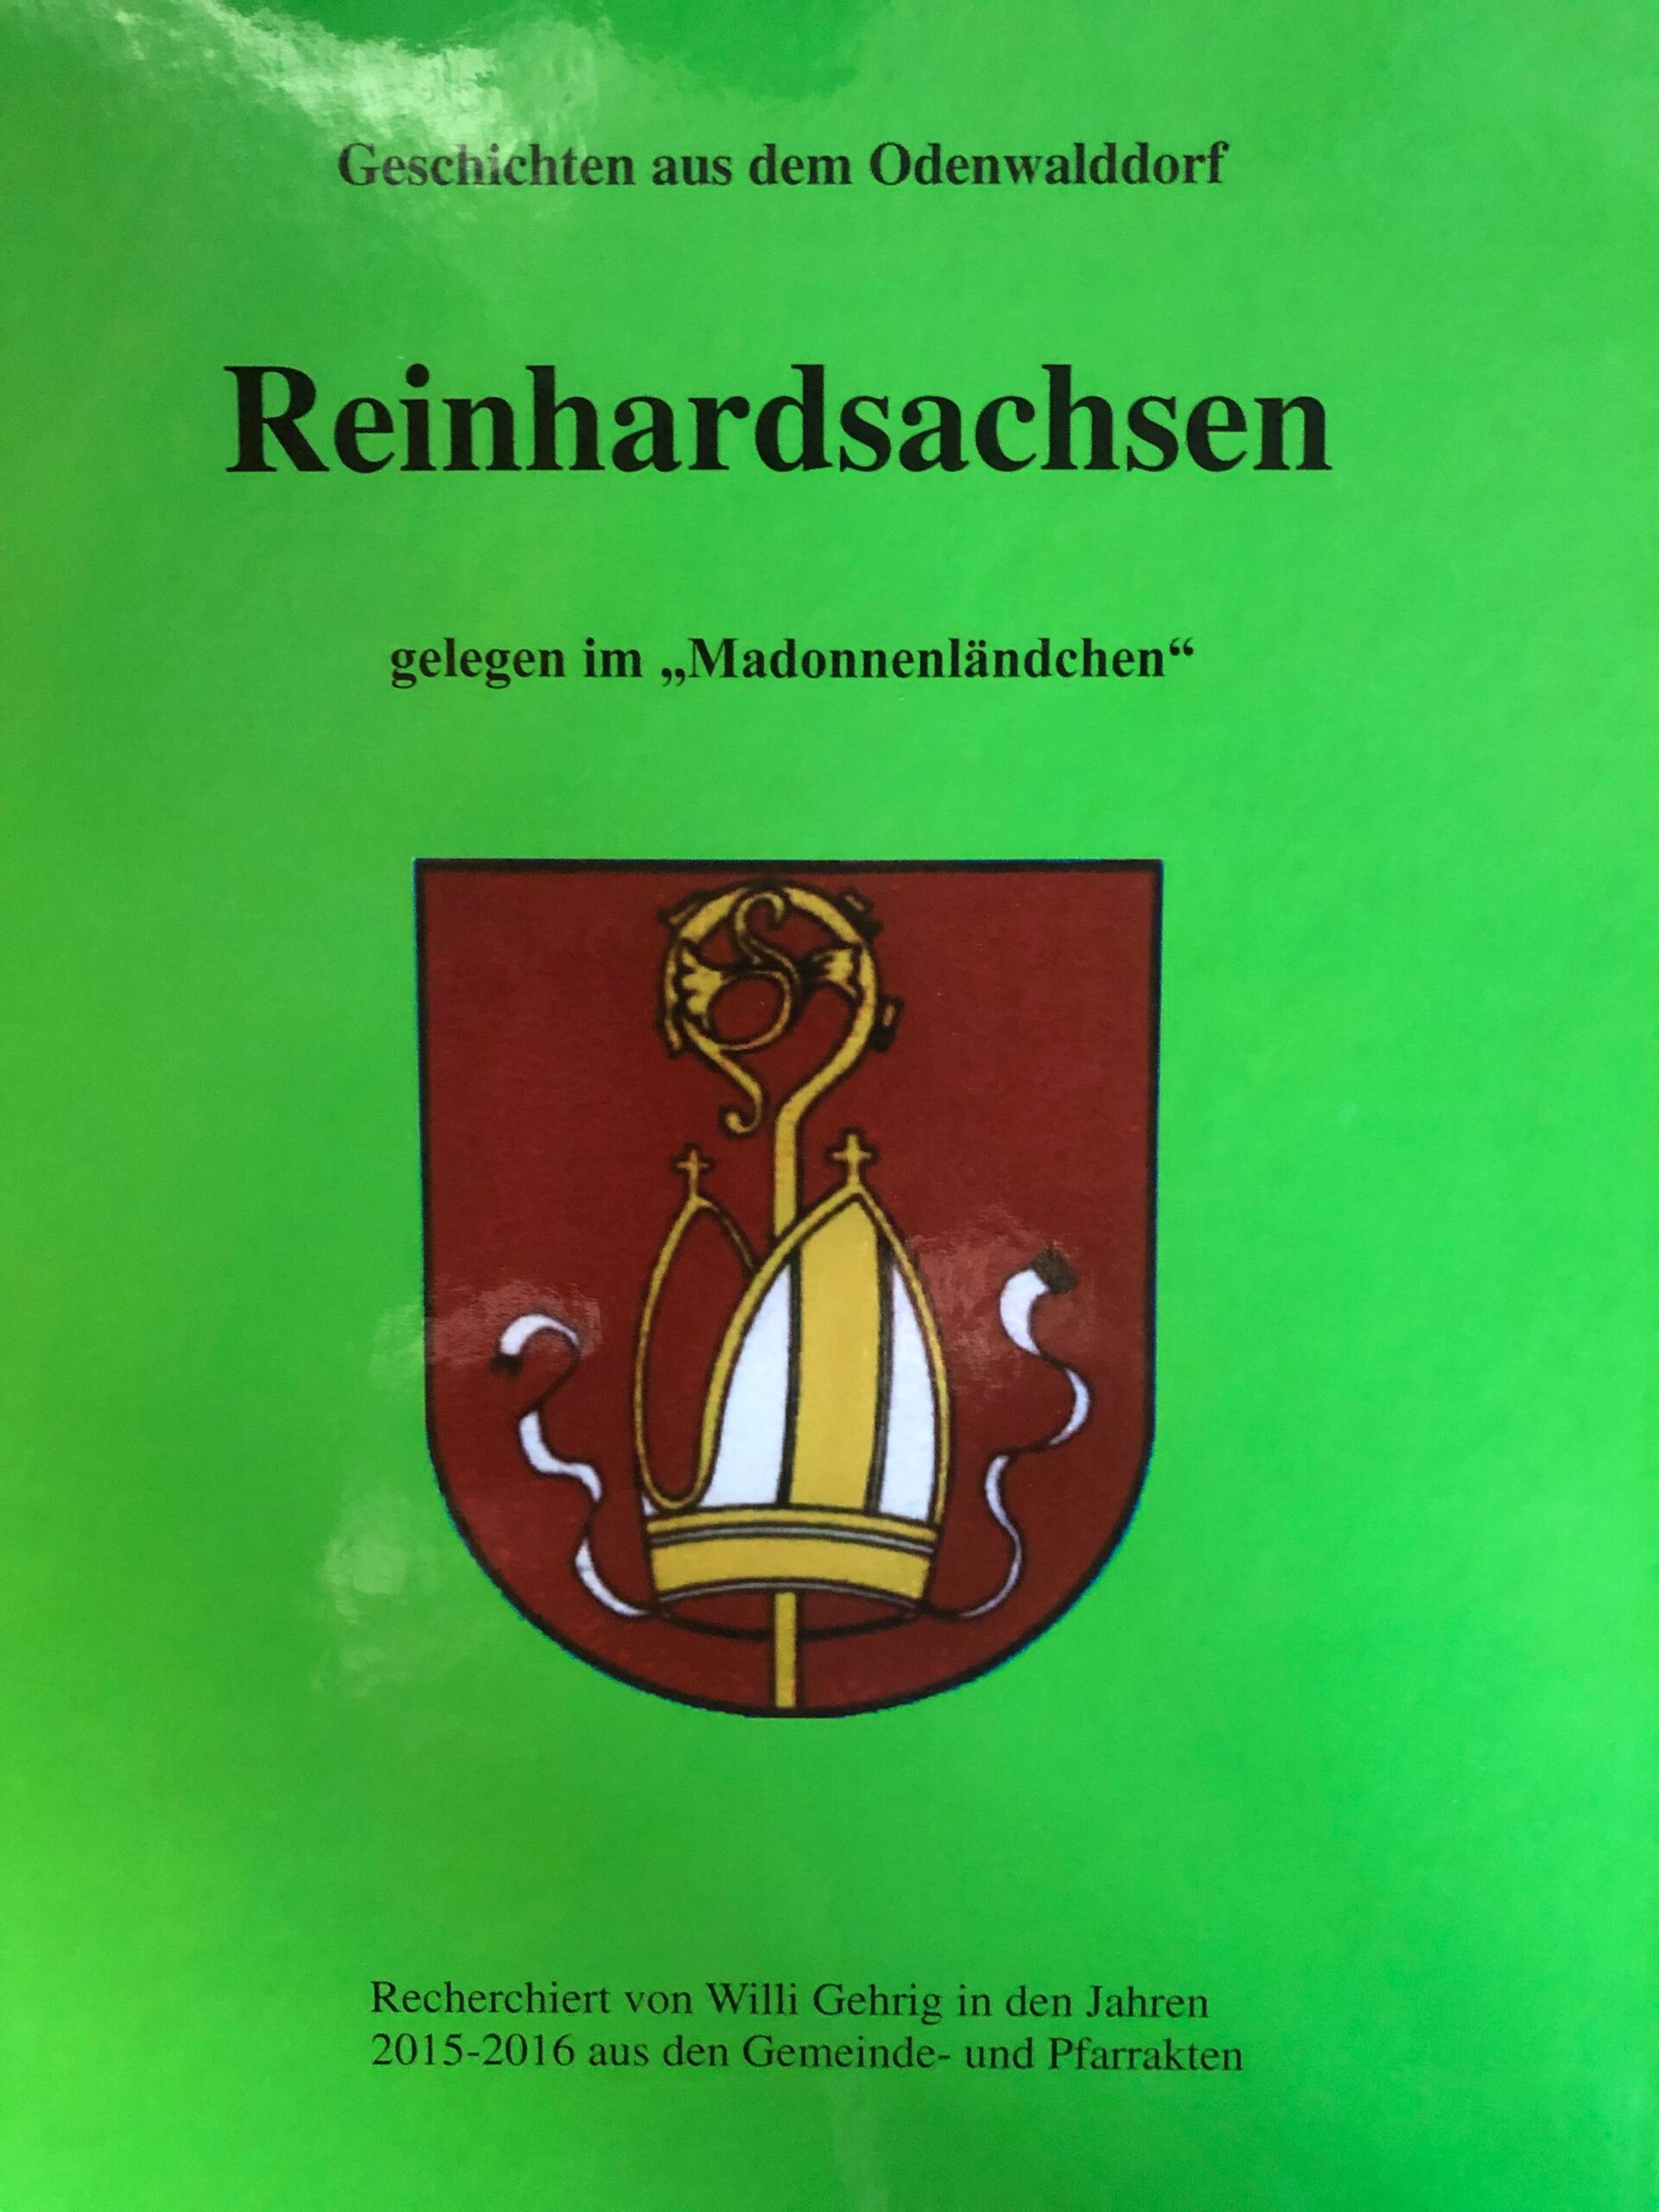 Buch: Geschichten aus dem Odenwalddorf Reinhardsachsen gelegen im "Madonnenländchen"